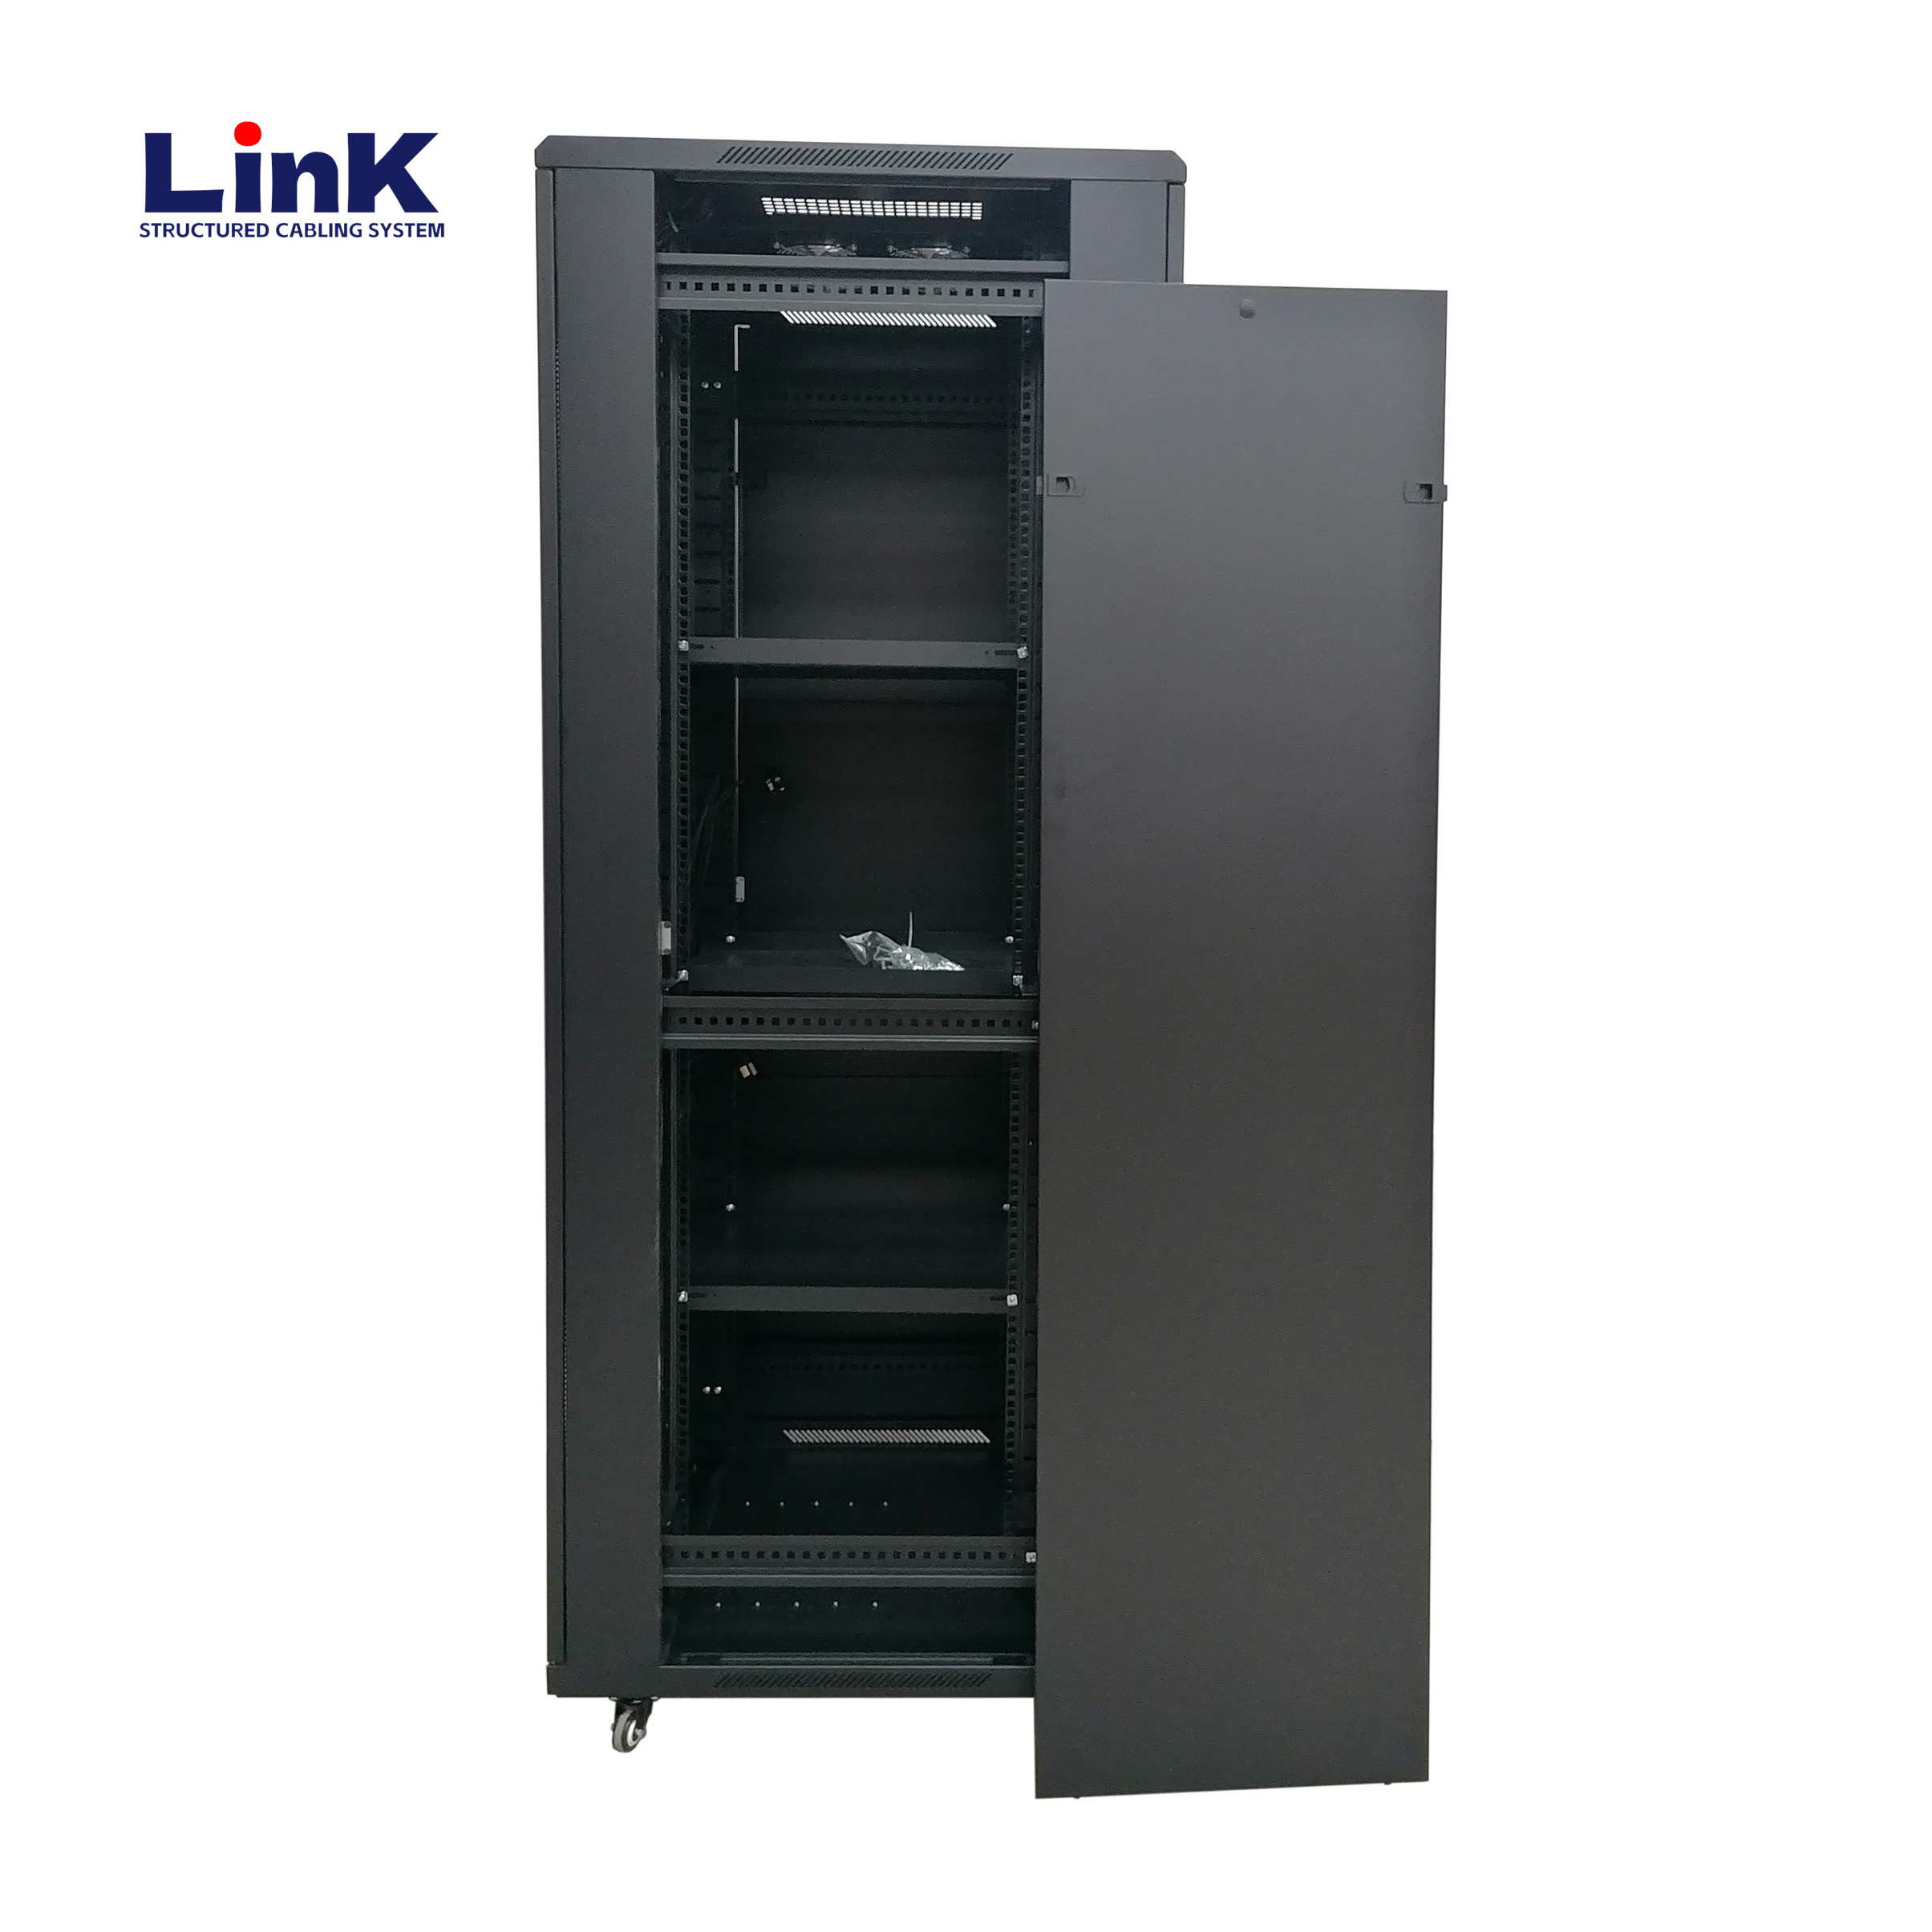 19" 42u Equipment Rack (600mm X 800mm) Floor Standing Server Cabinet with casters